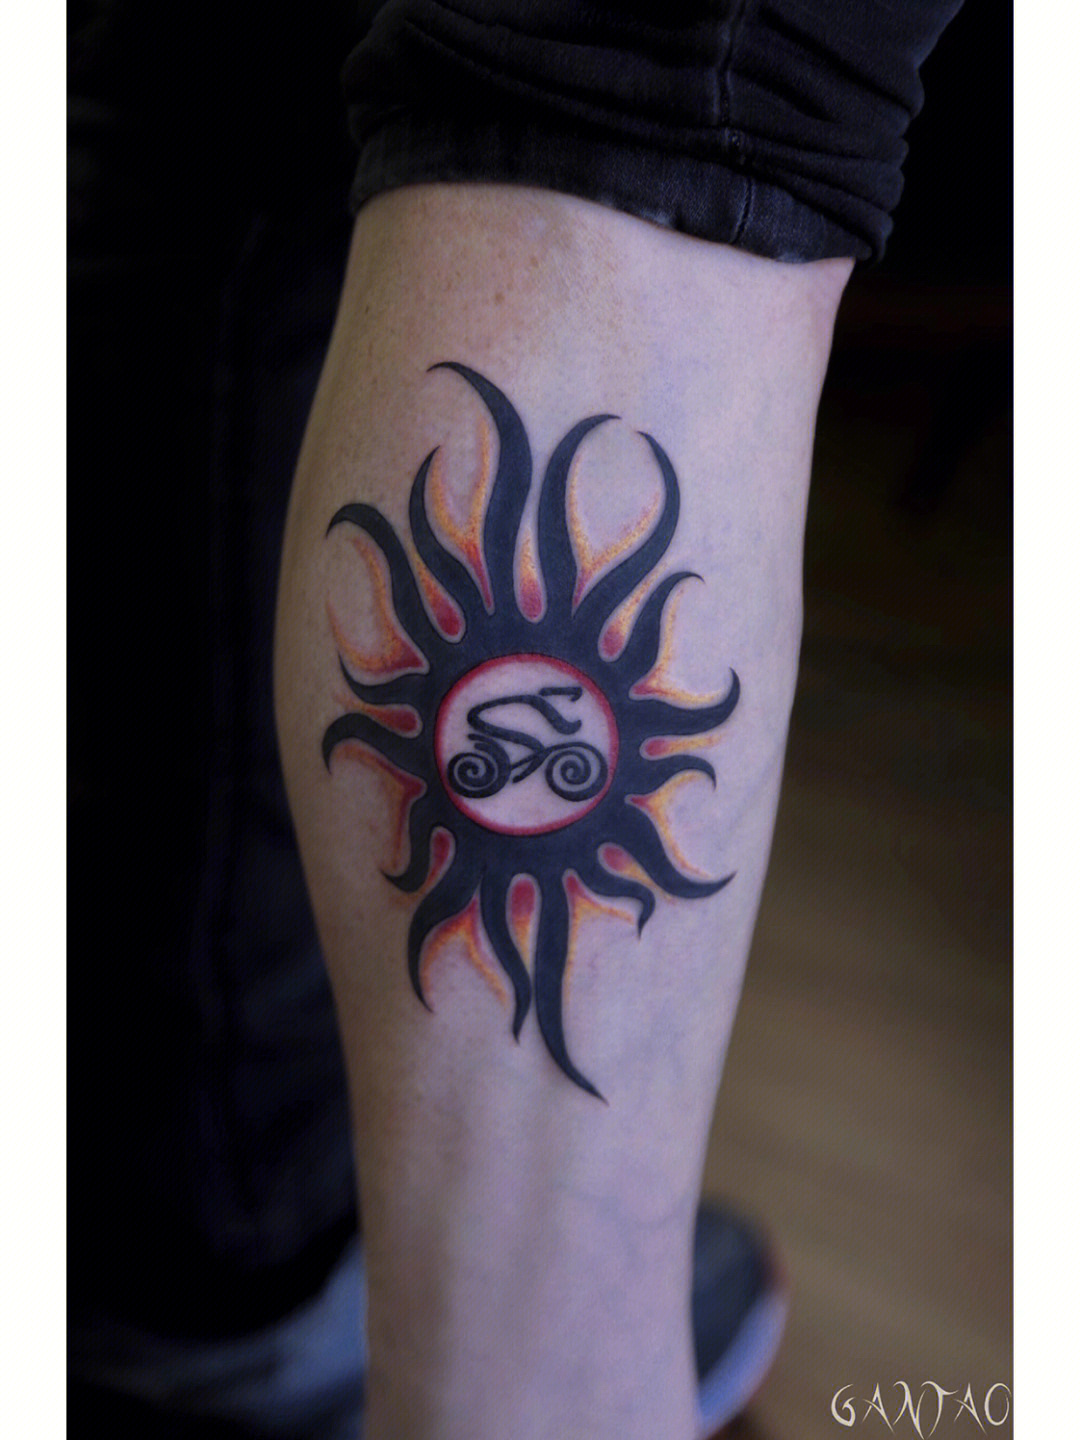 太阳神纹身半甲图片